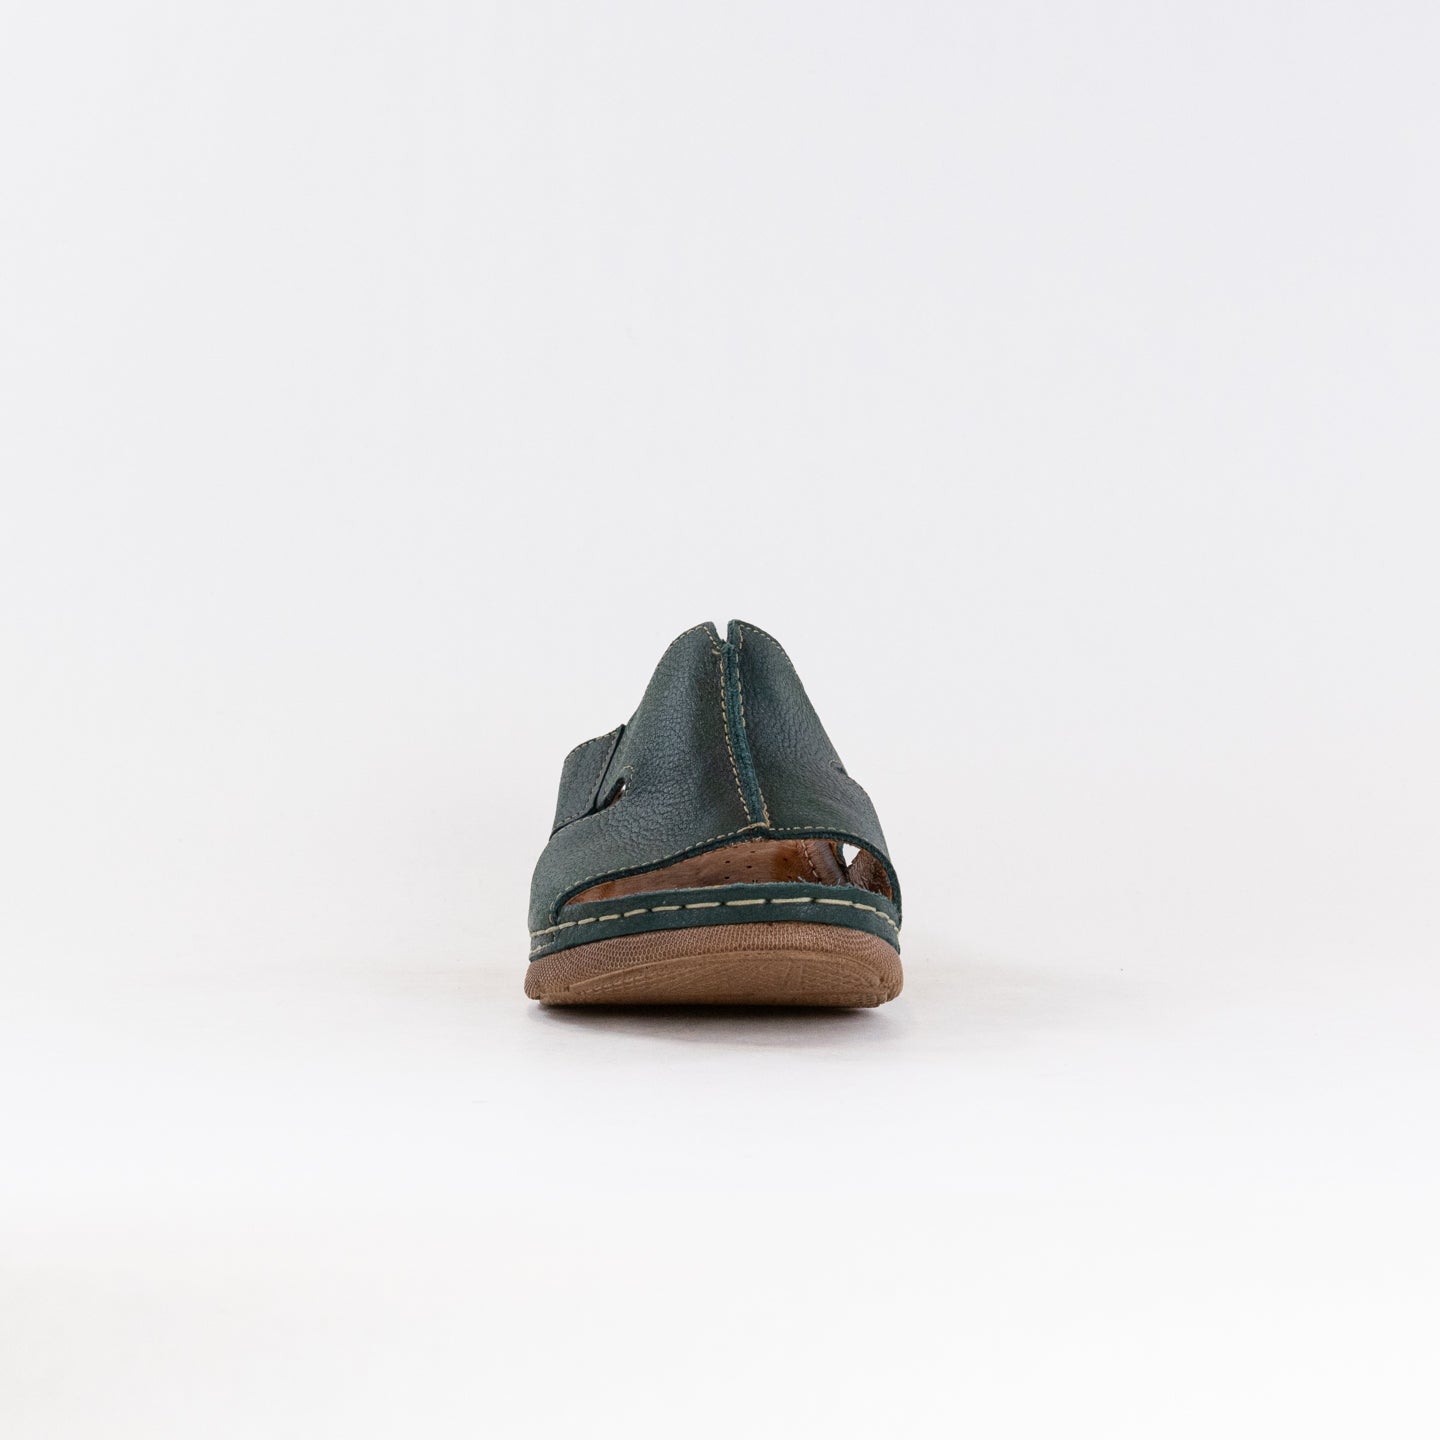 V-Italia 925 Sandal (Women's) - Green Leather